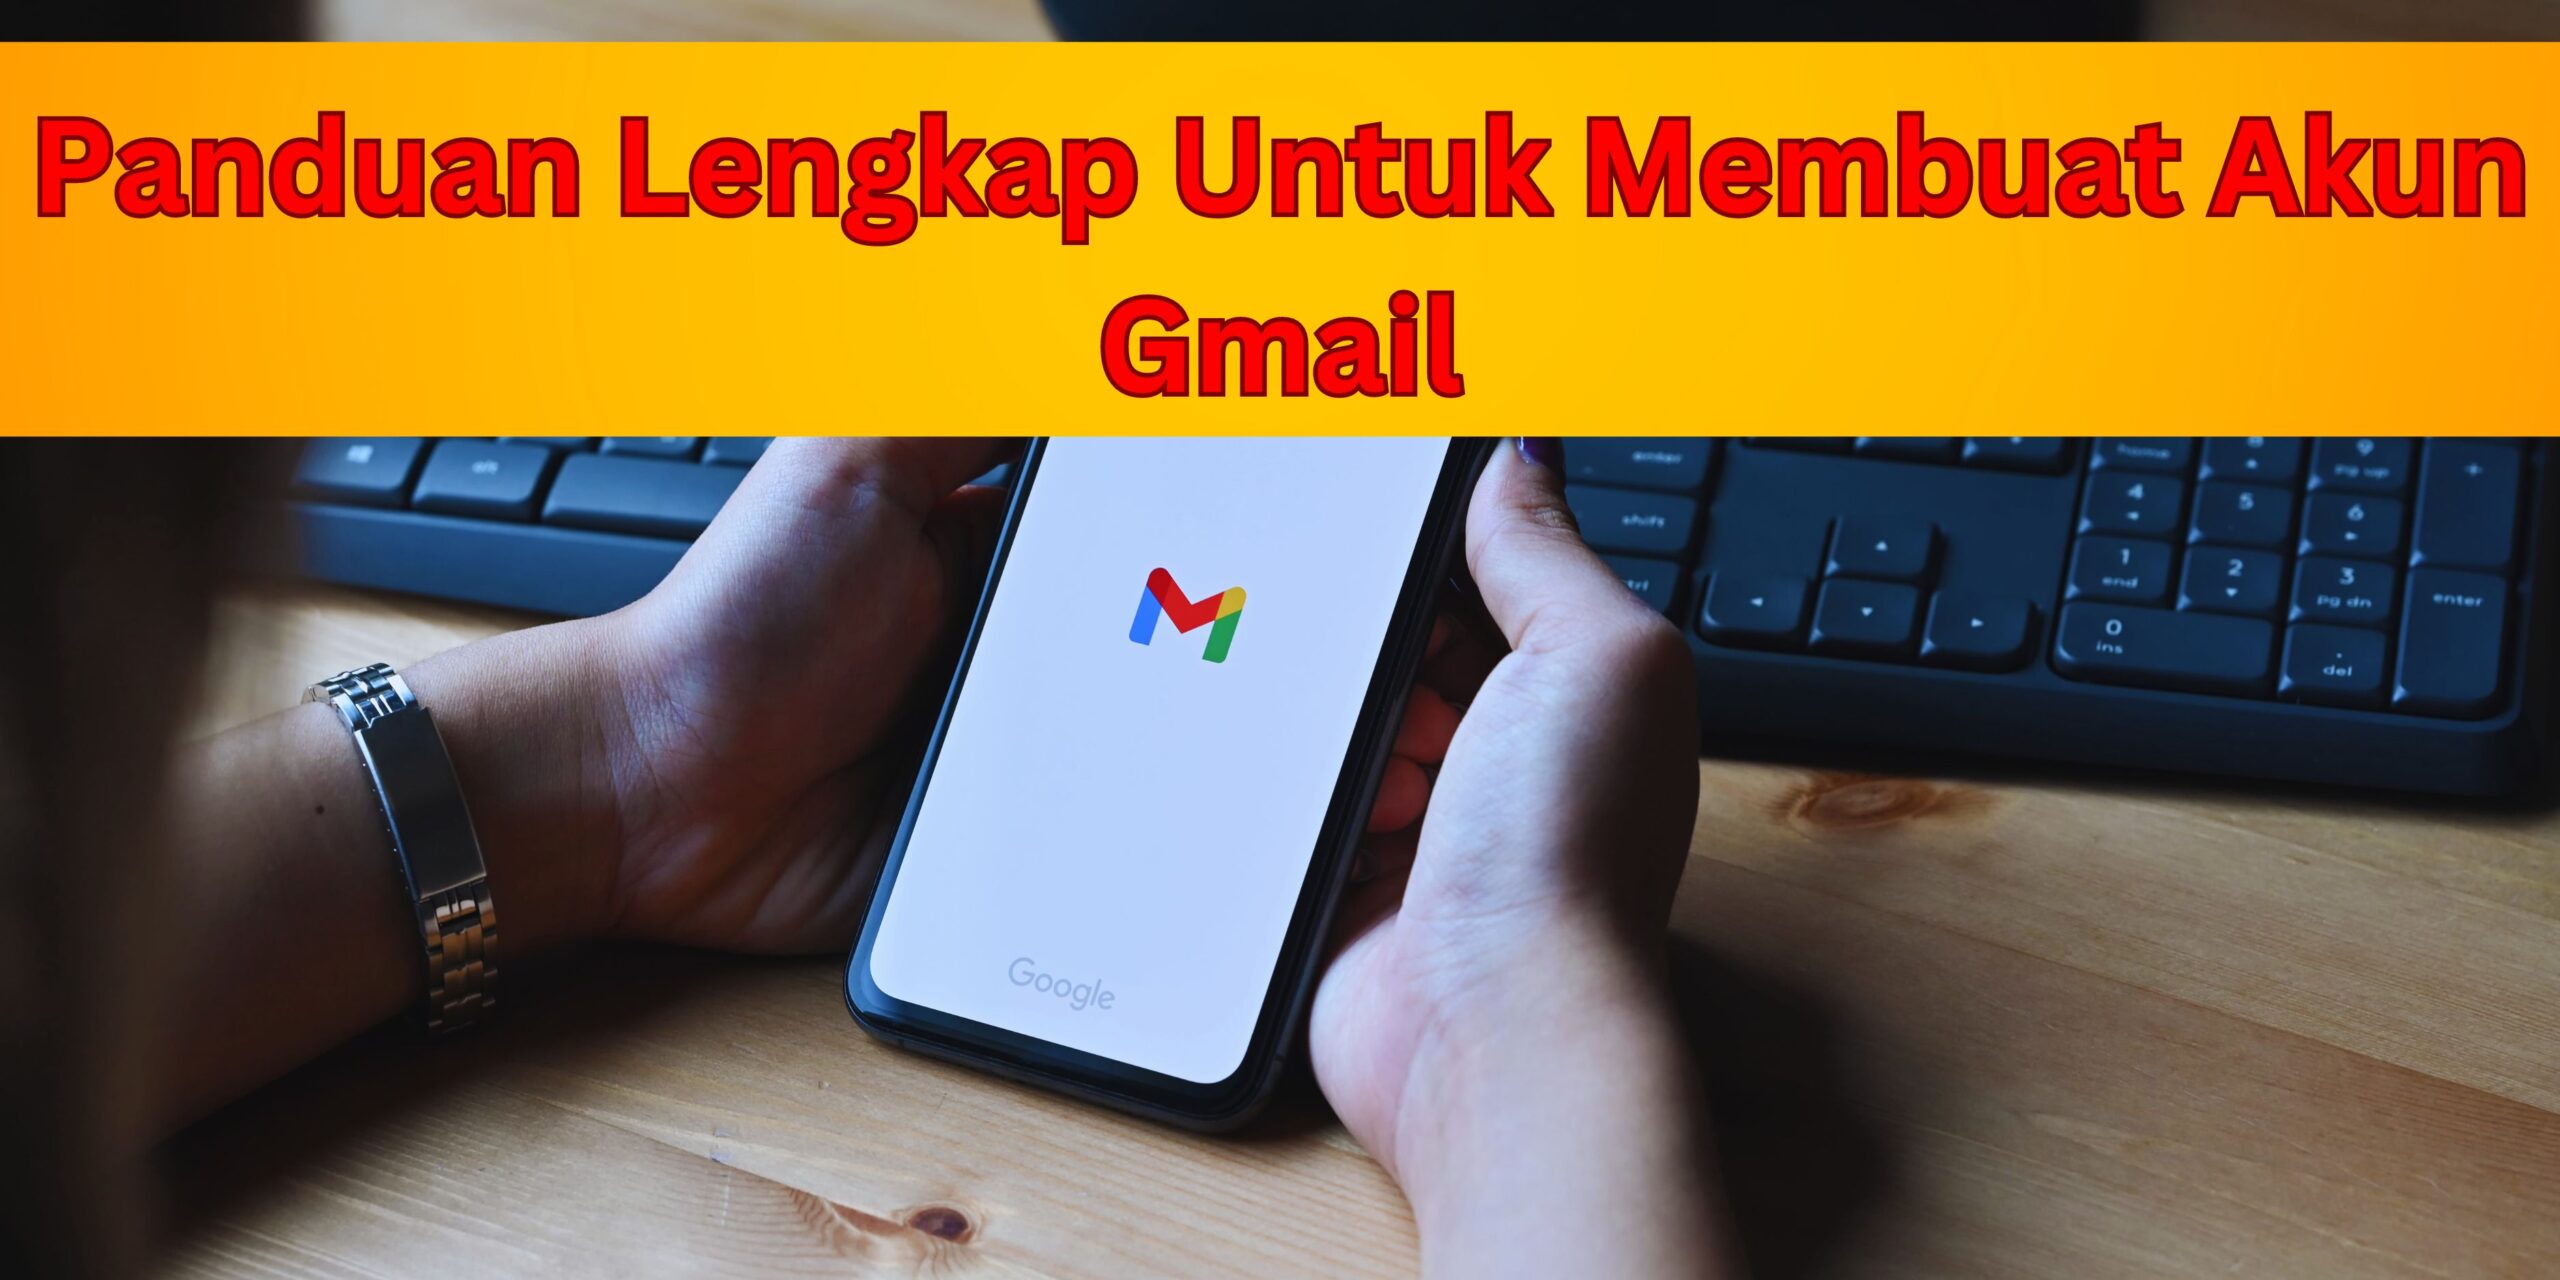 Panduan Lengkap Untuk Membuat Akun Gmail